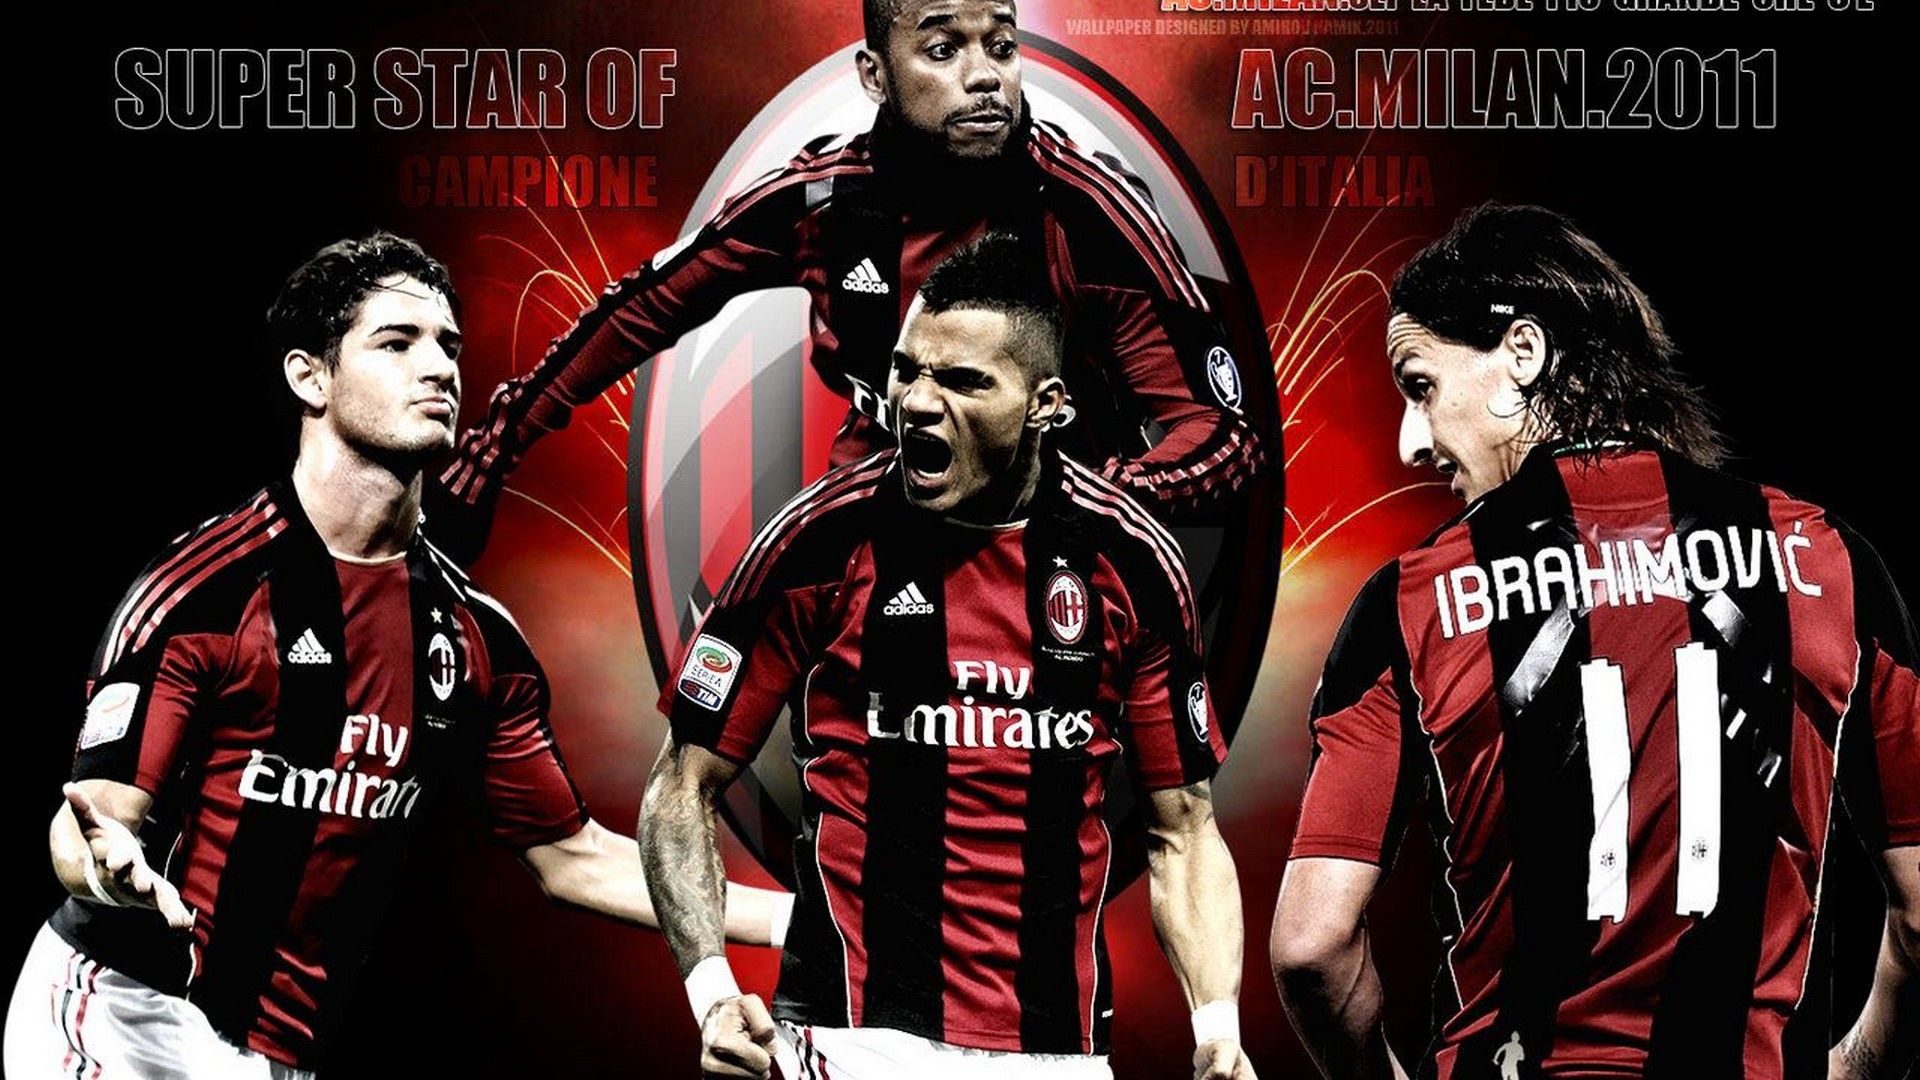 AC Milan Legends Desktop Wallpaper Football Wallpaper